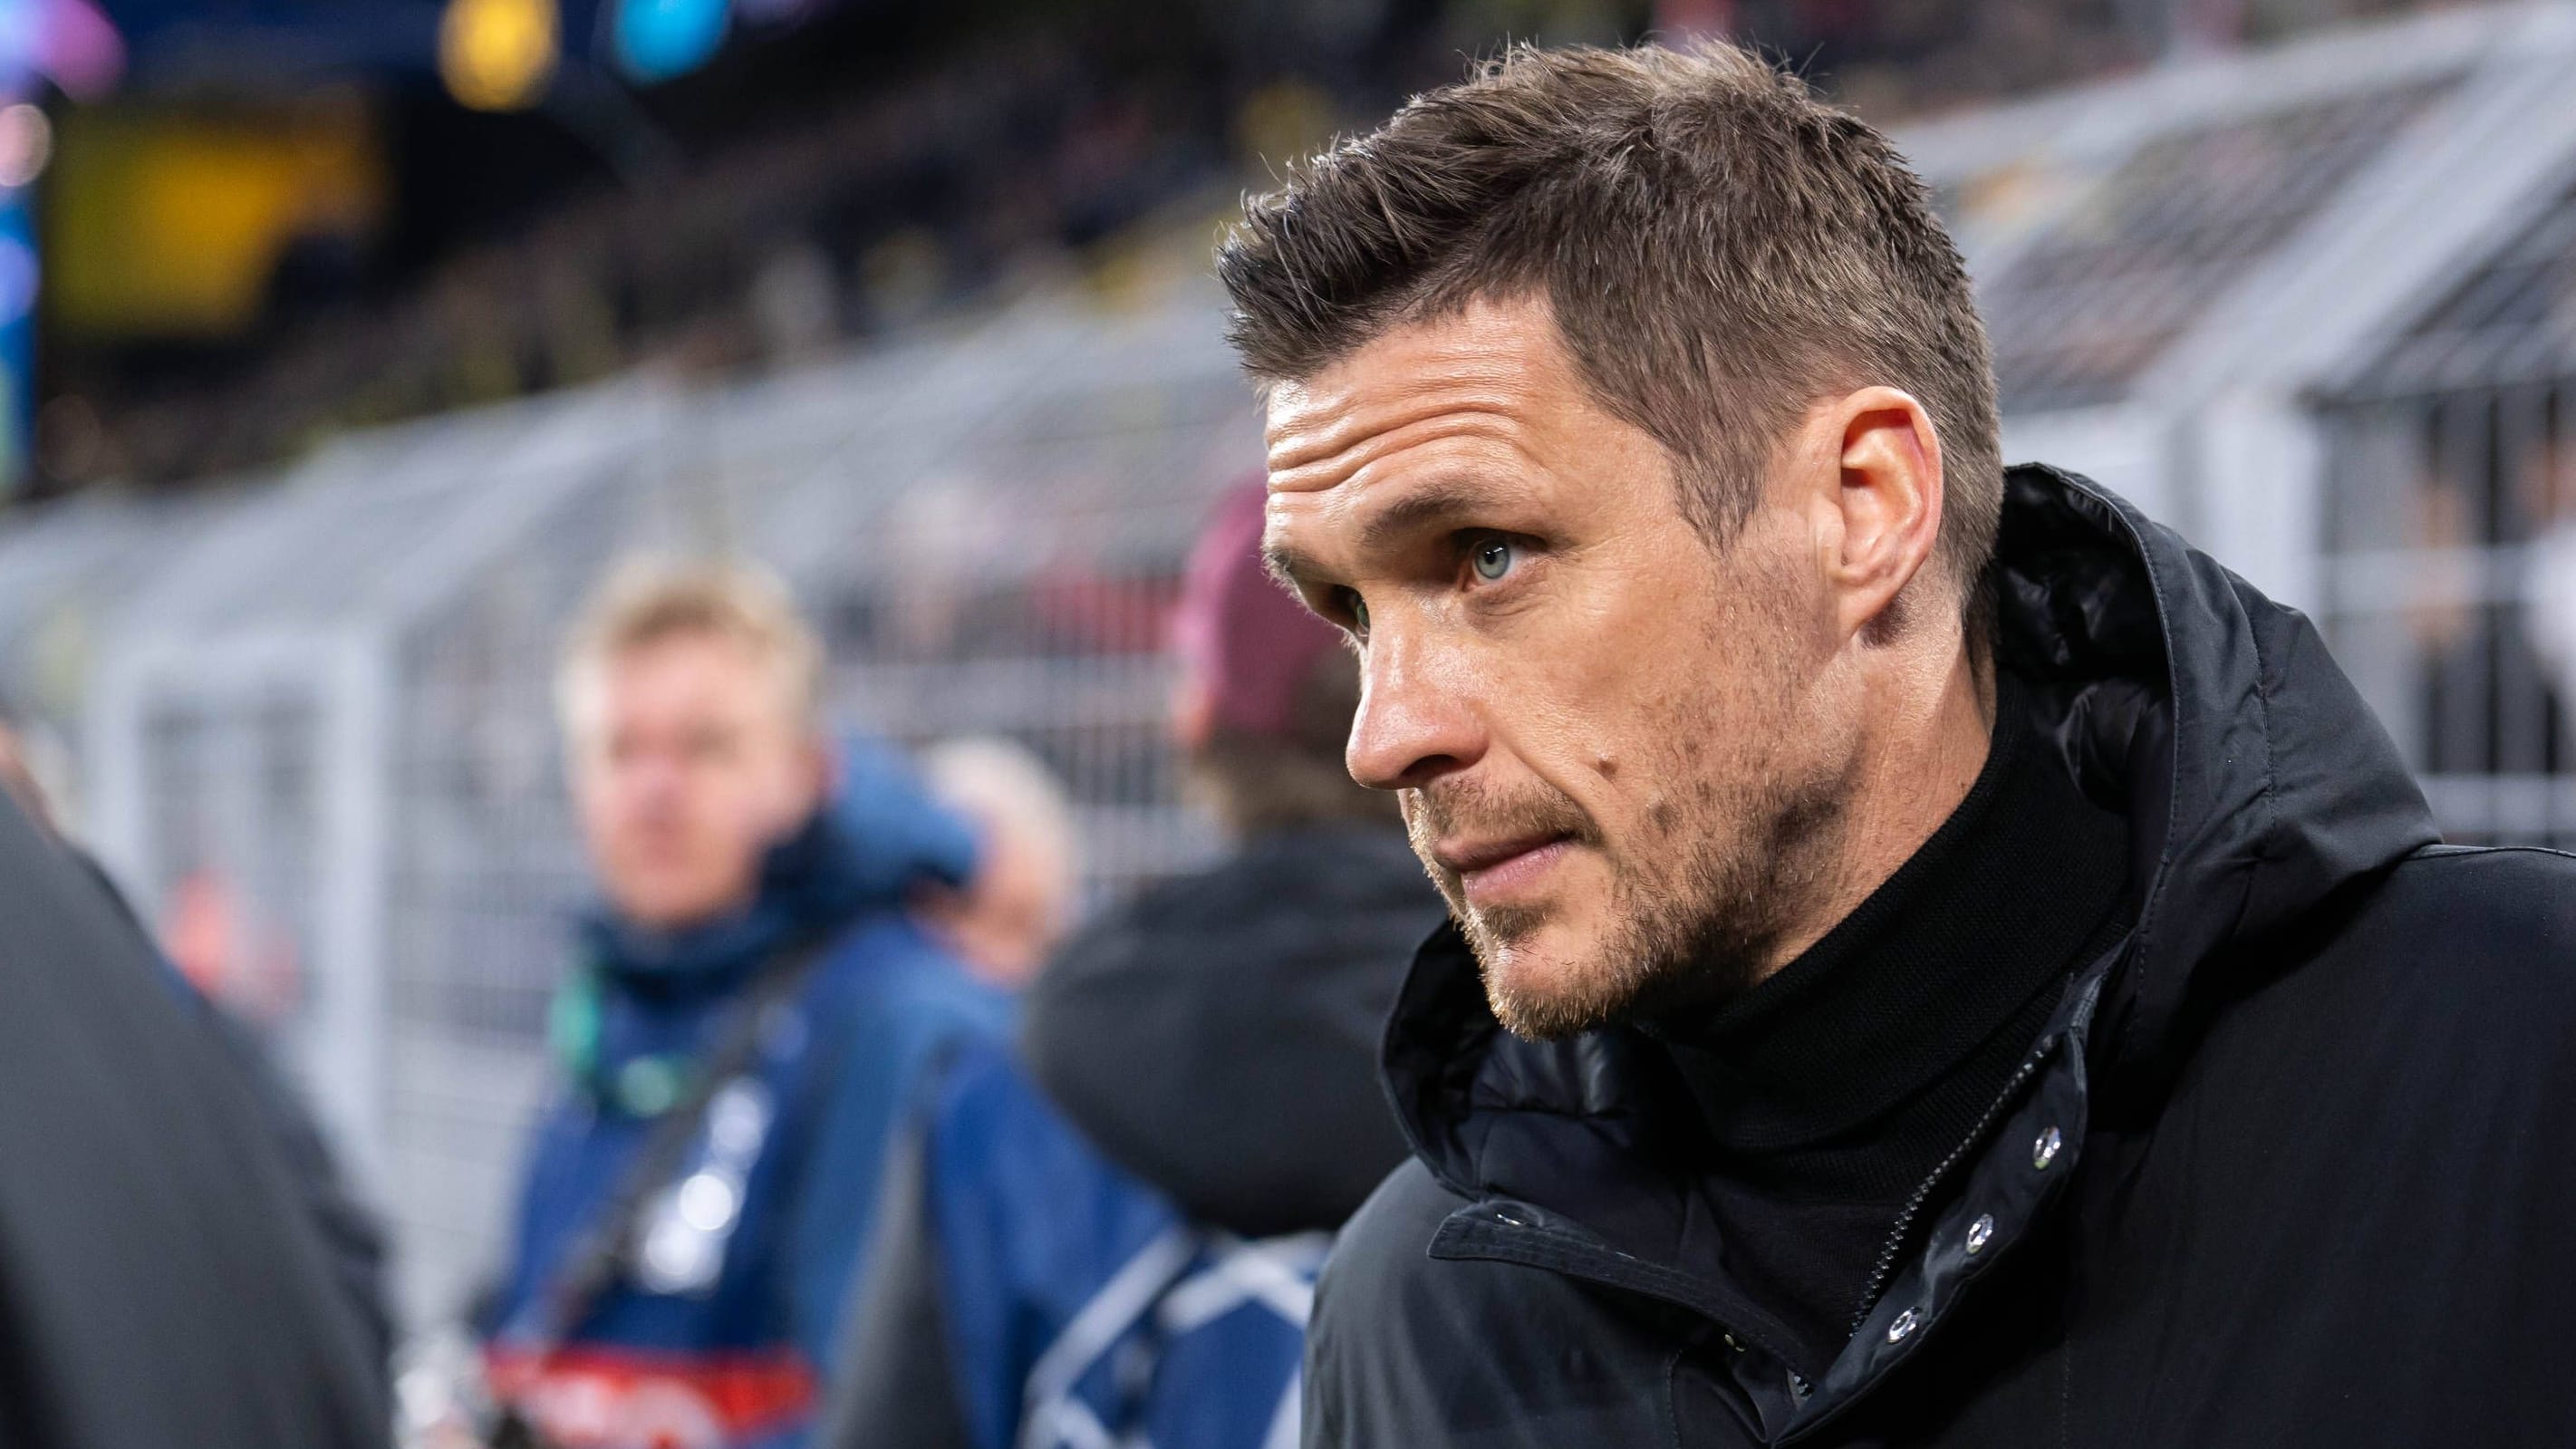 Bundesliga: Lars Ricken statt Sebastian Kehl als BVB-Boss – ist das fair?